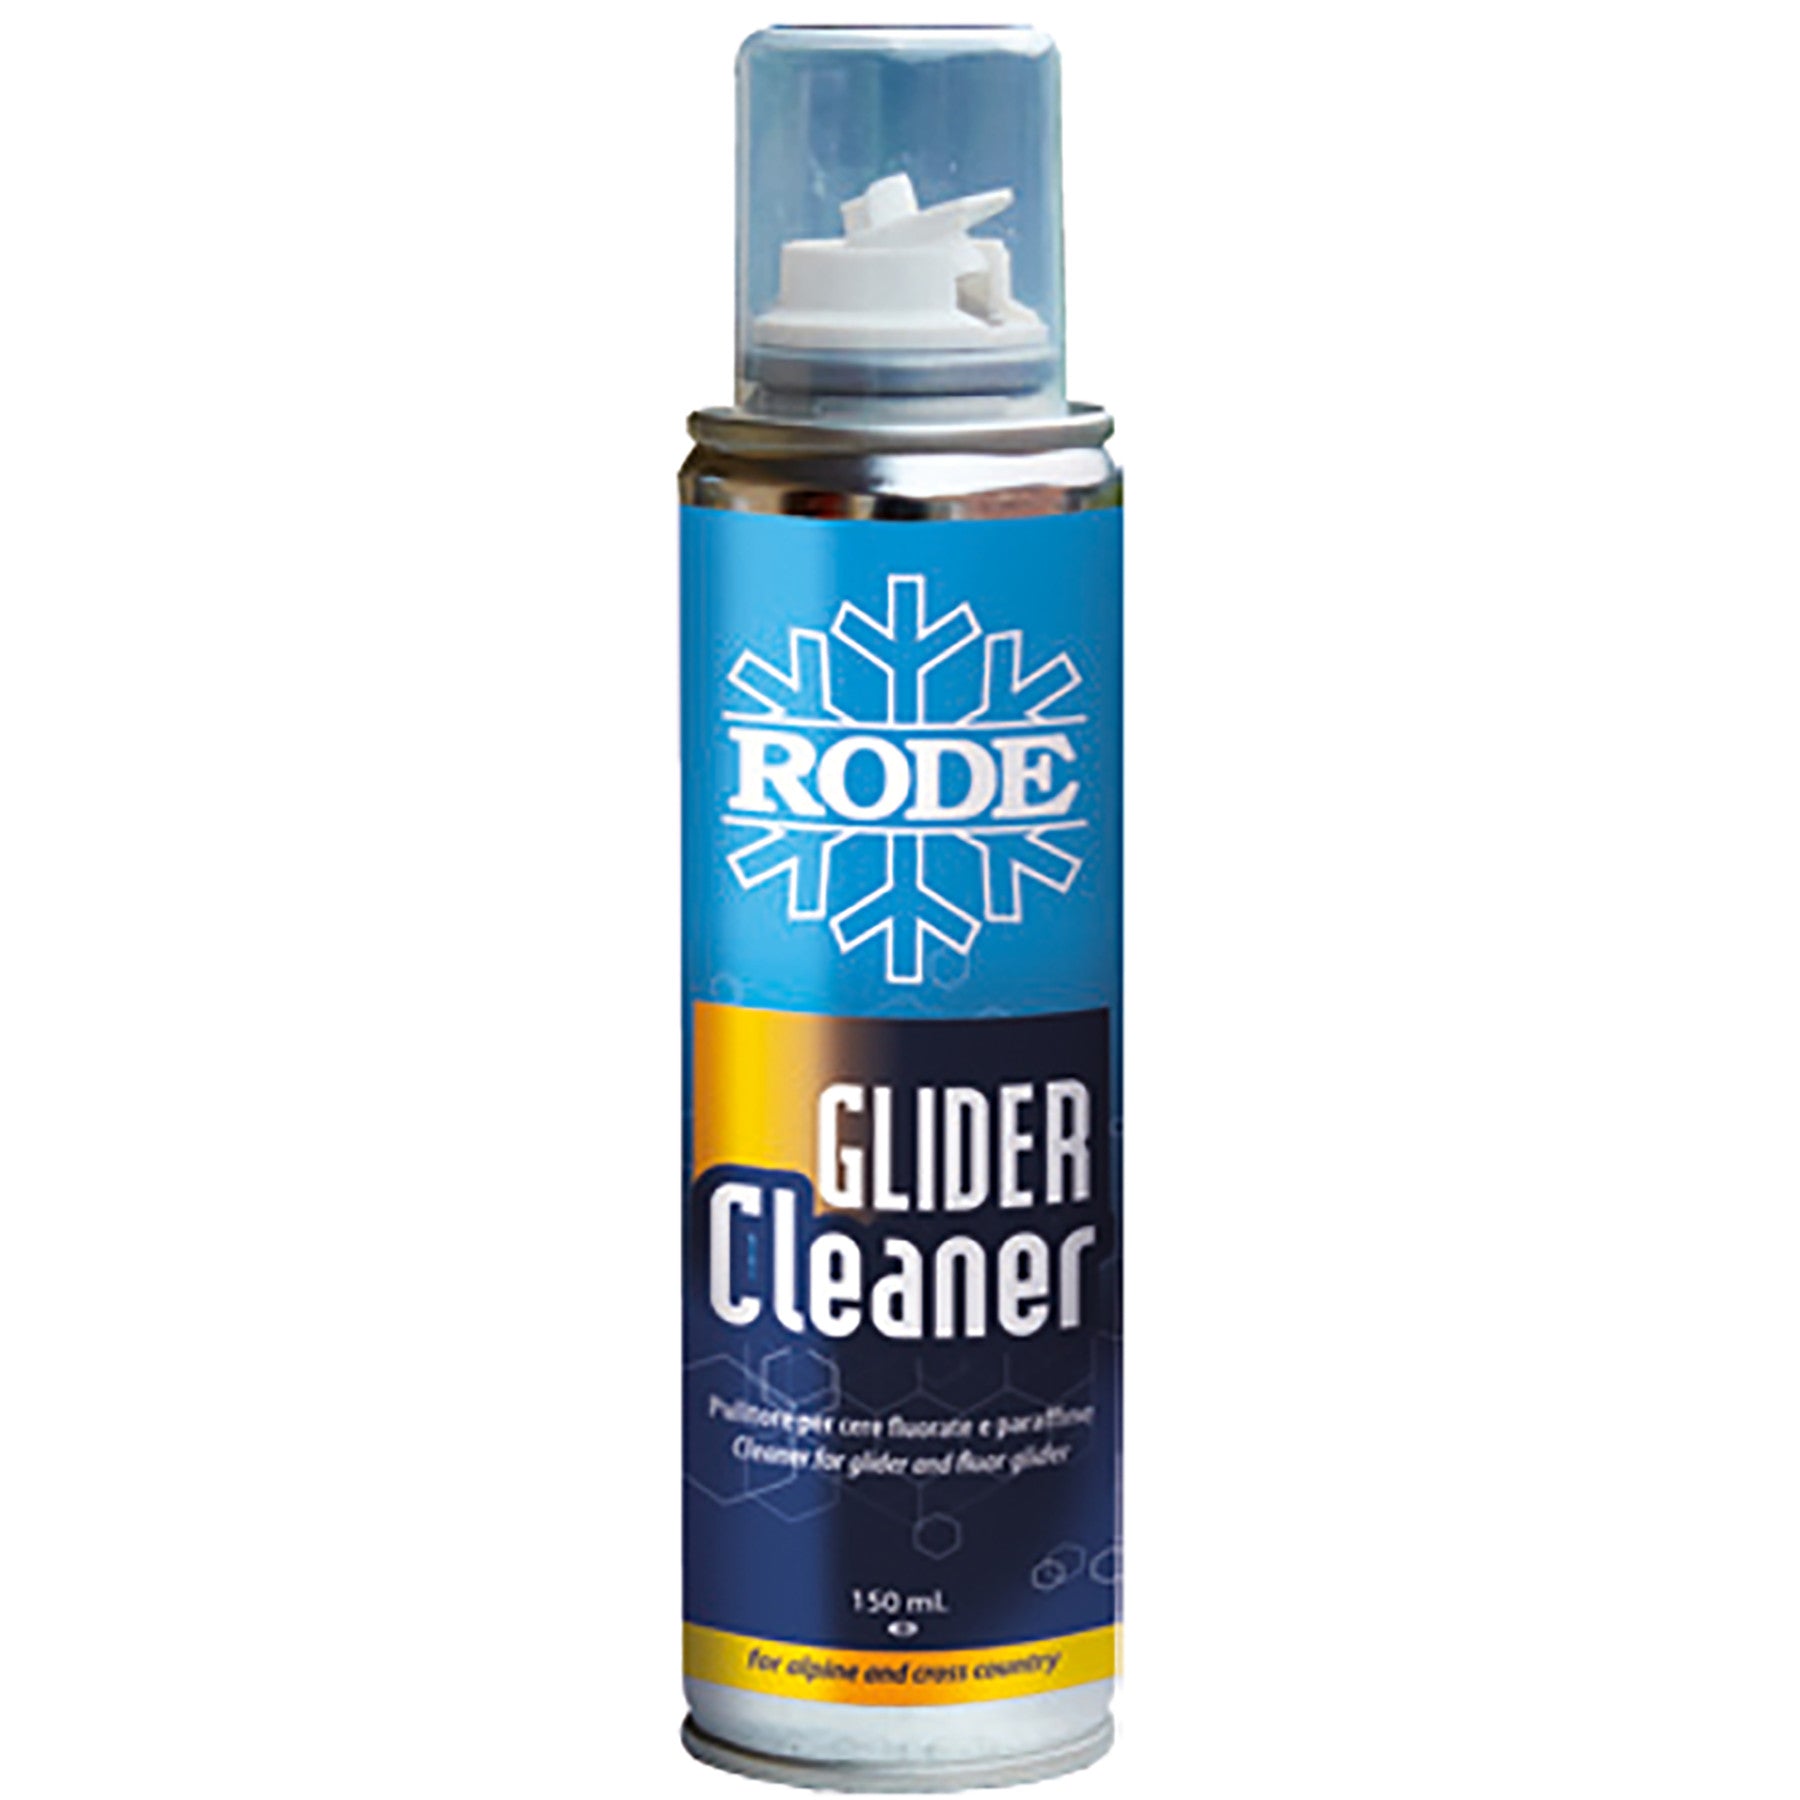 Rode Glider Cleaner 150ml Spray